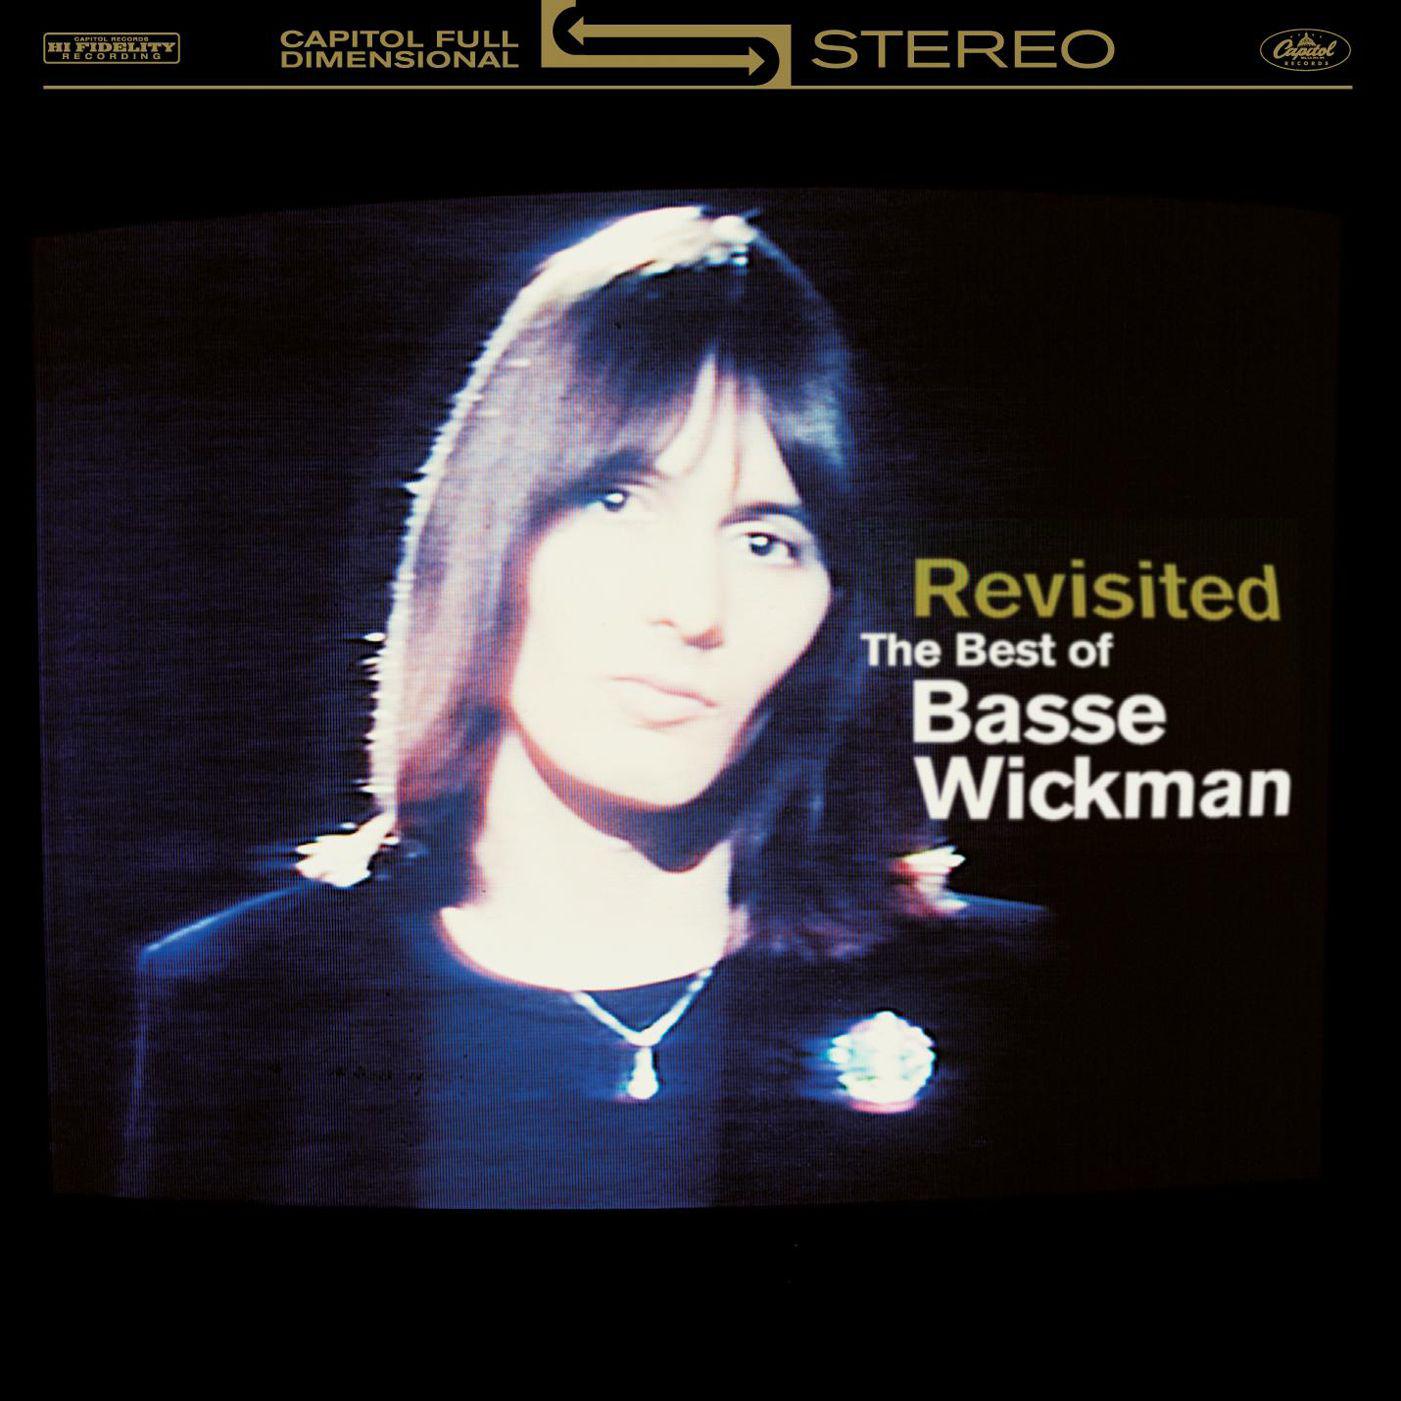 Basse Wickman - Higher Ground (2005 Remaster)